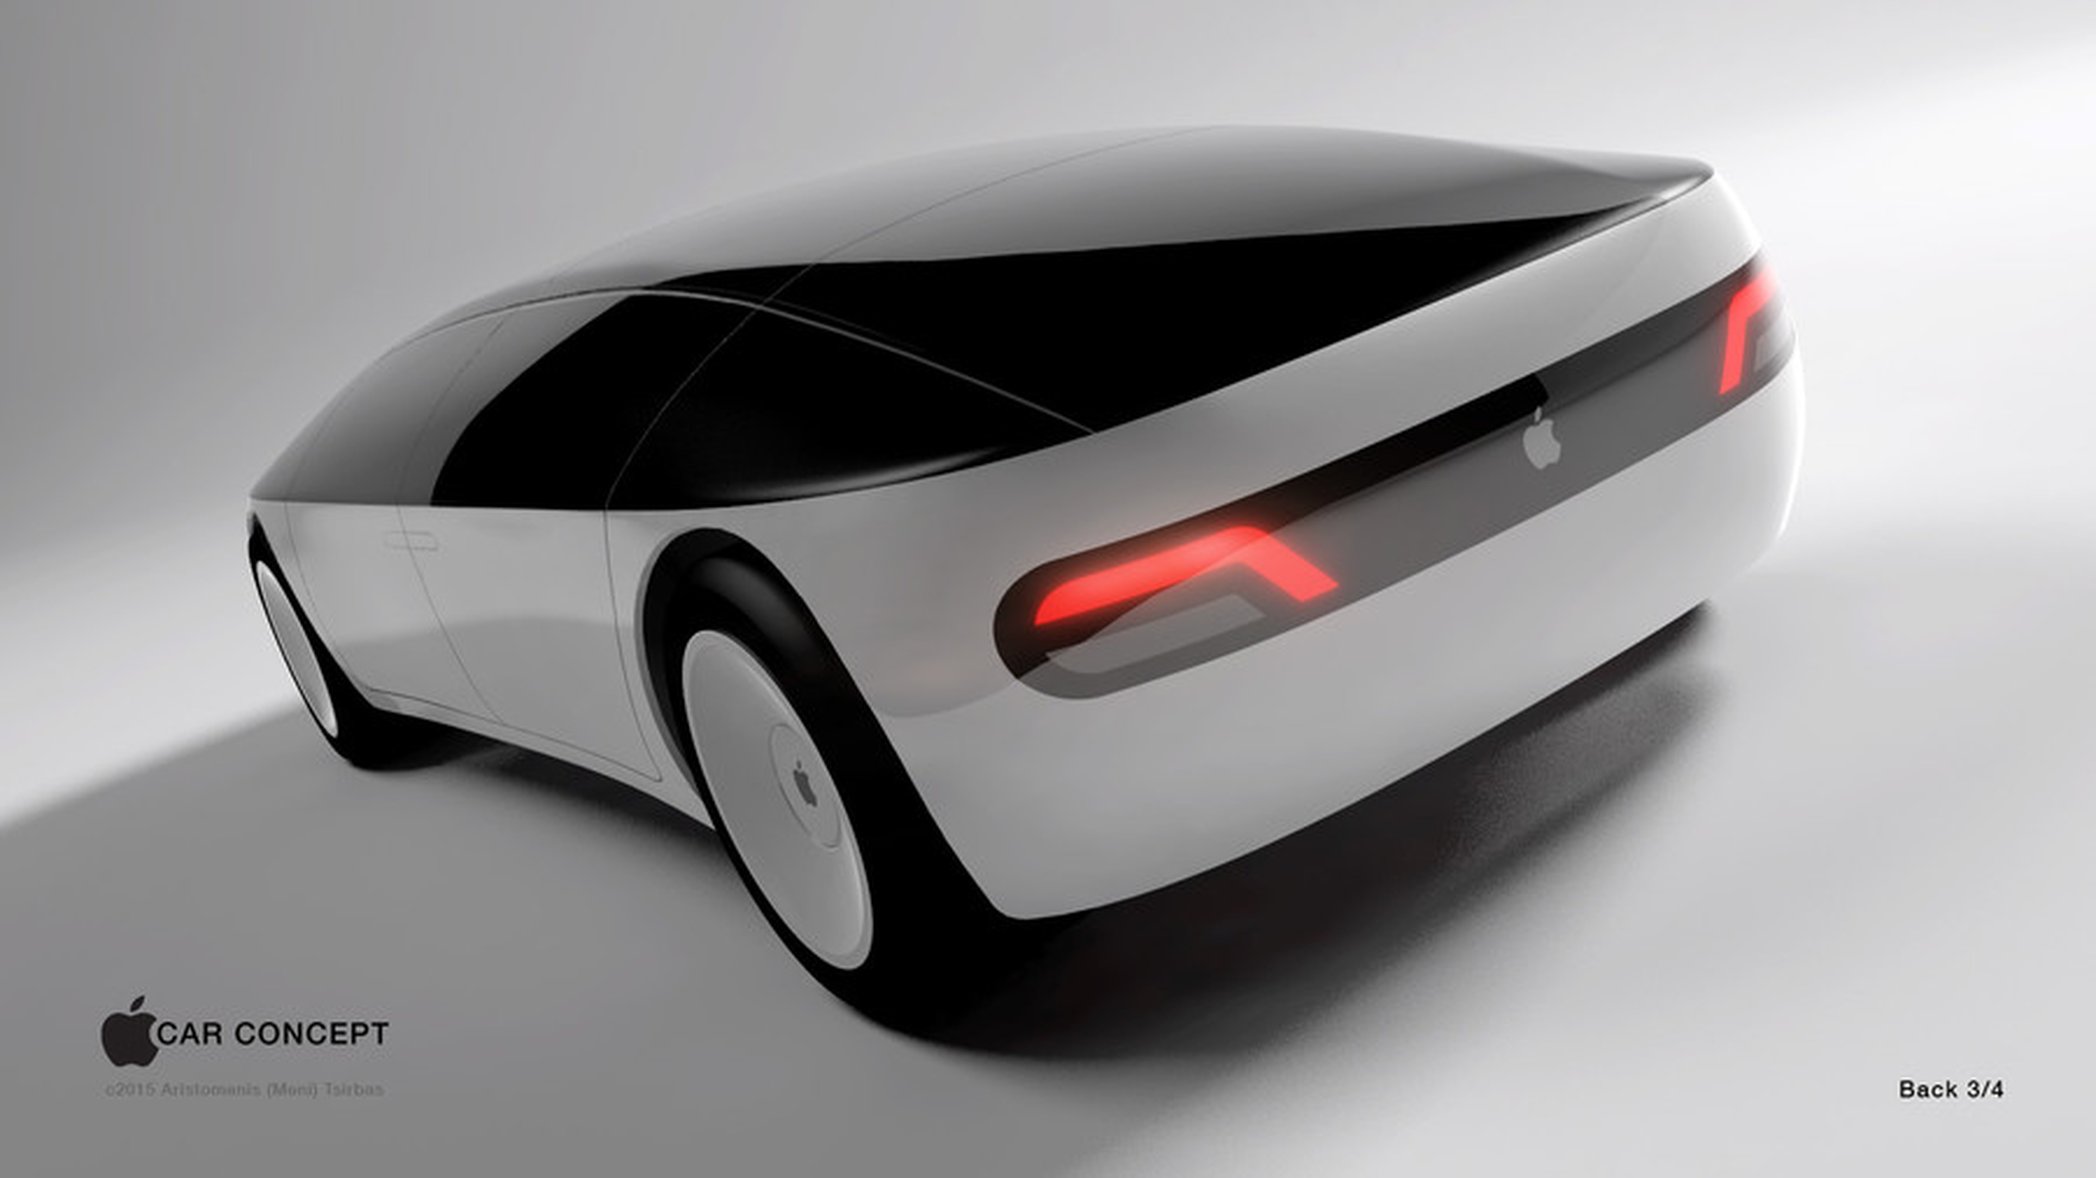 En av många idéer om hur en bil från Apple skulle kunna se ut.Den här designen från by Aristomenis Tsirbas vann Freelancer's Apple Car Concept contest 2015. Foto: Freelancer.com